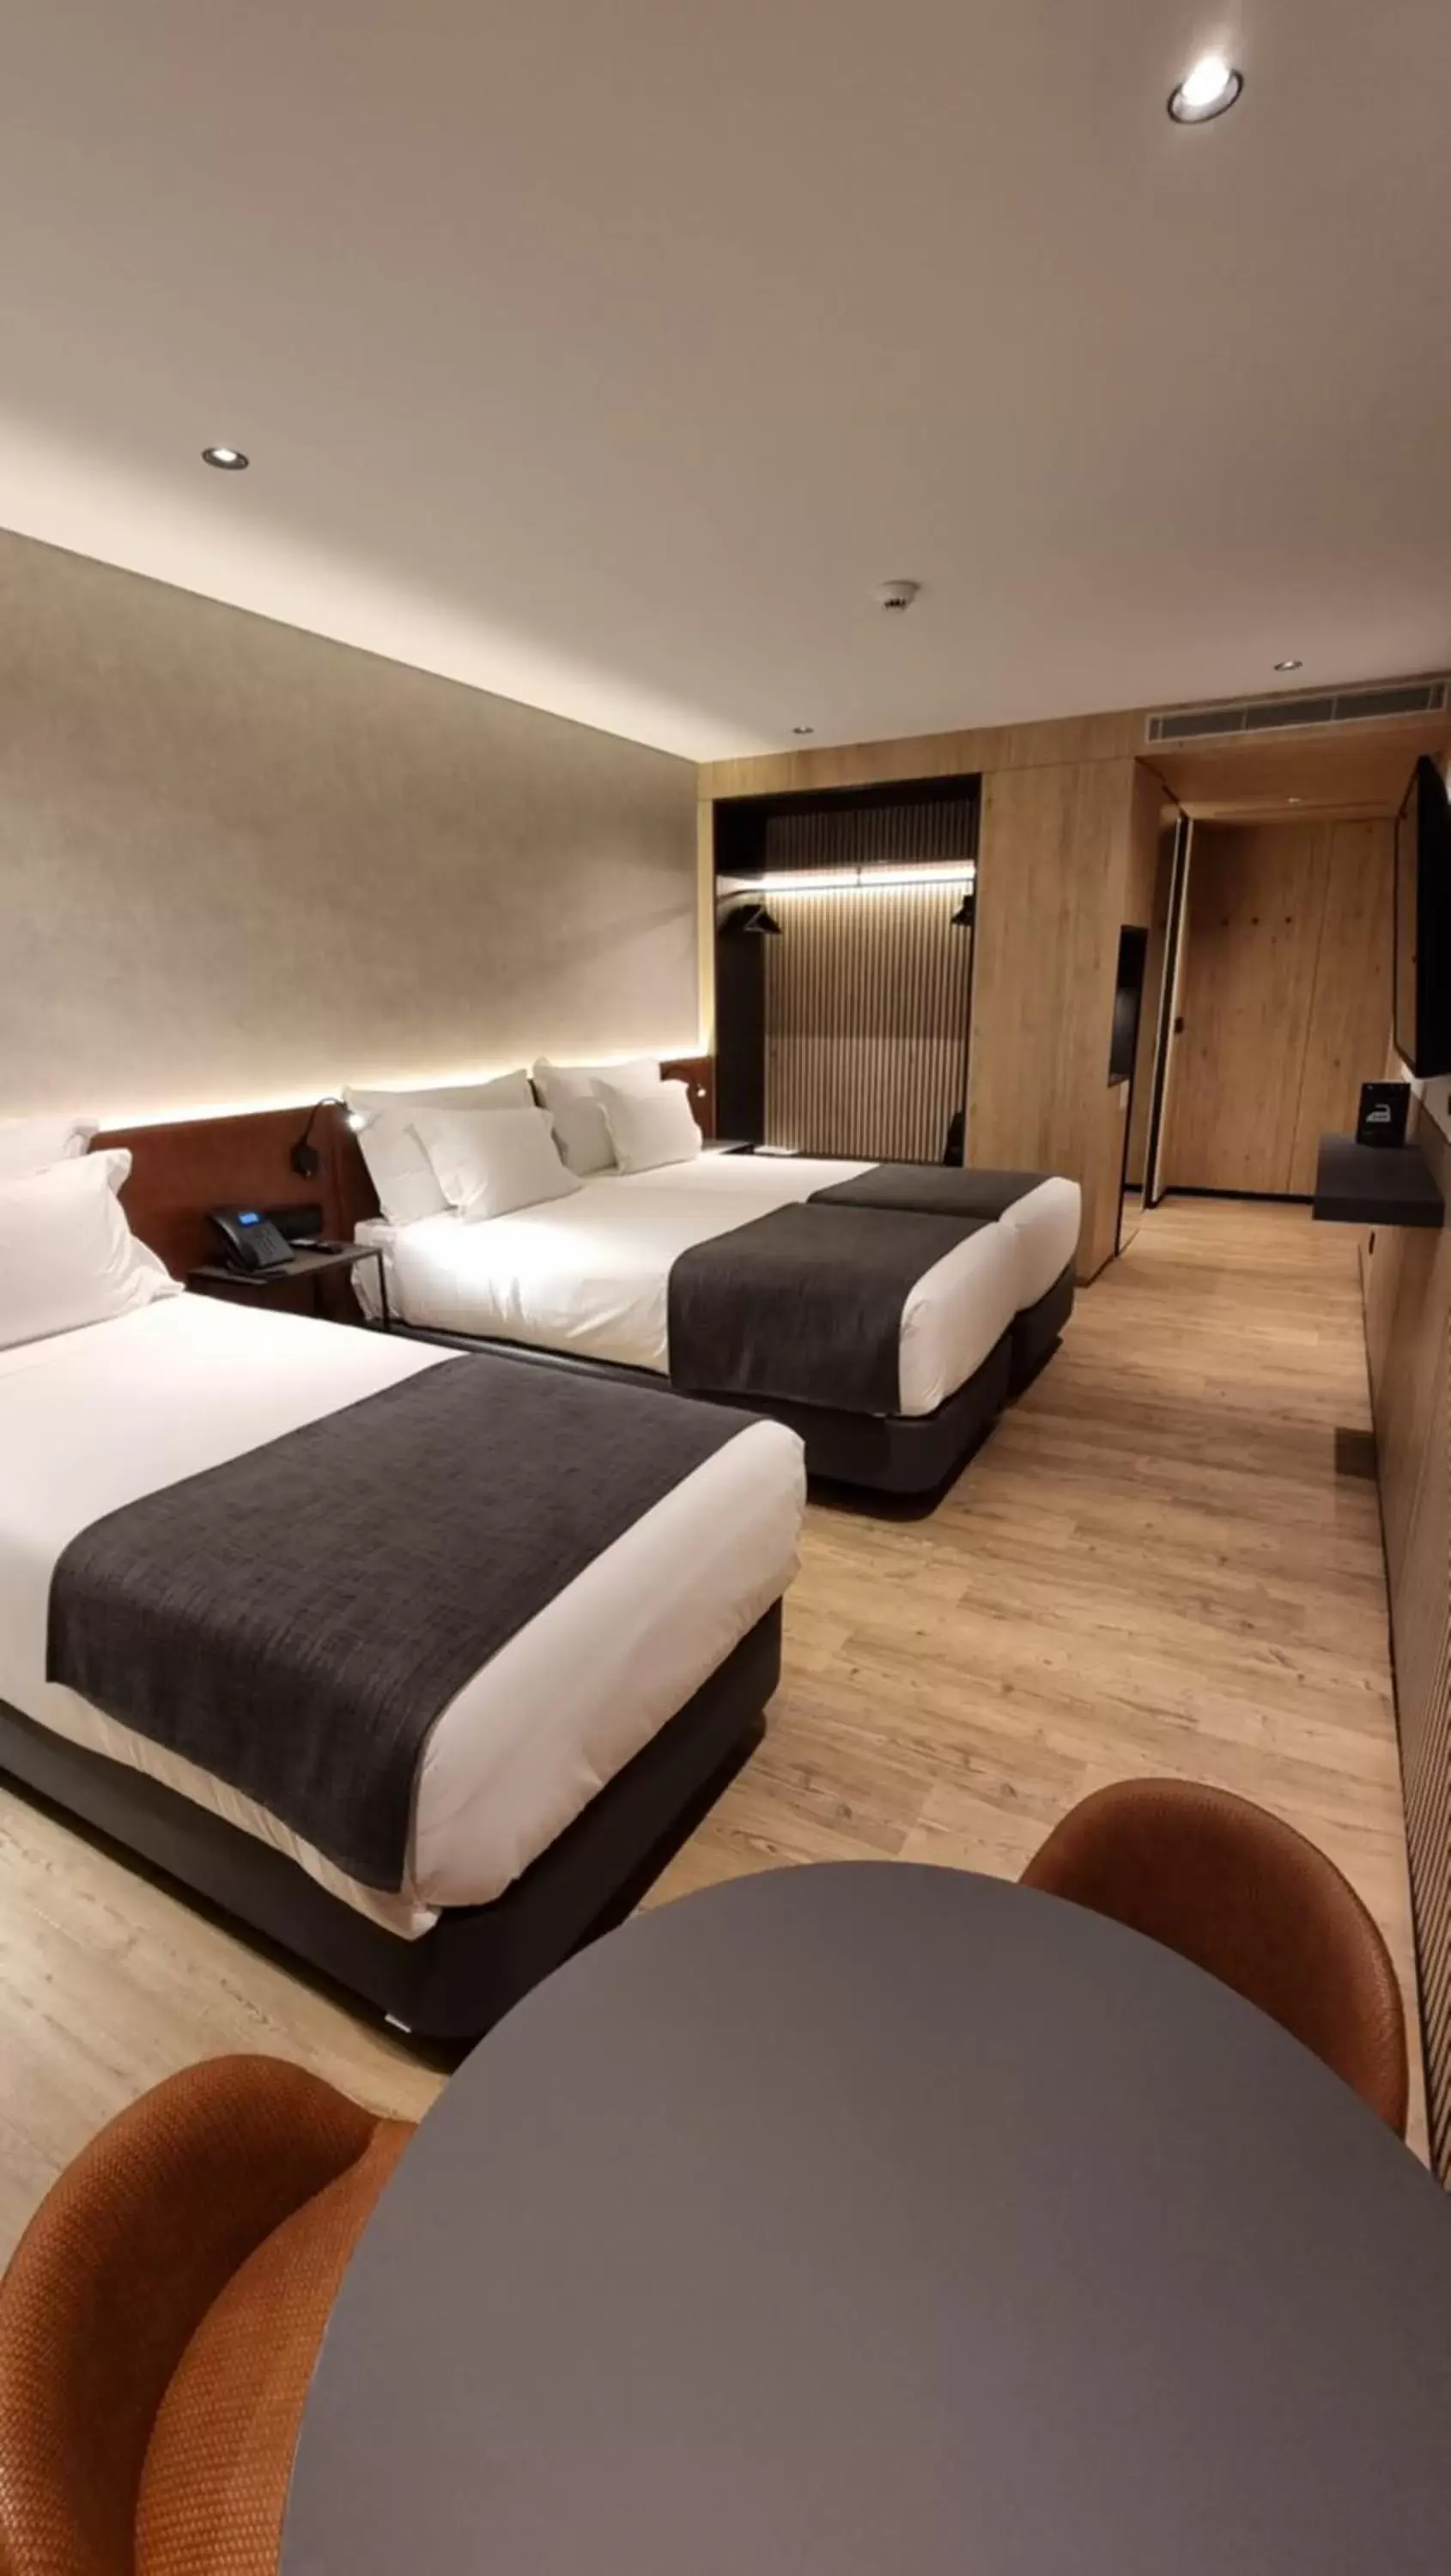 Bedroom in Hotel Principe Avila